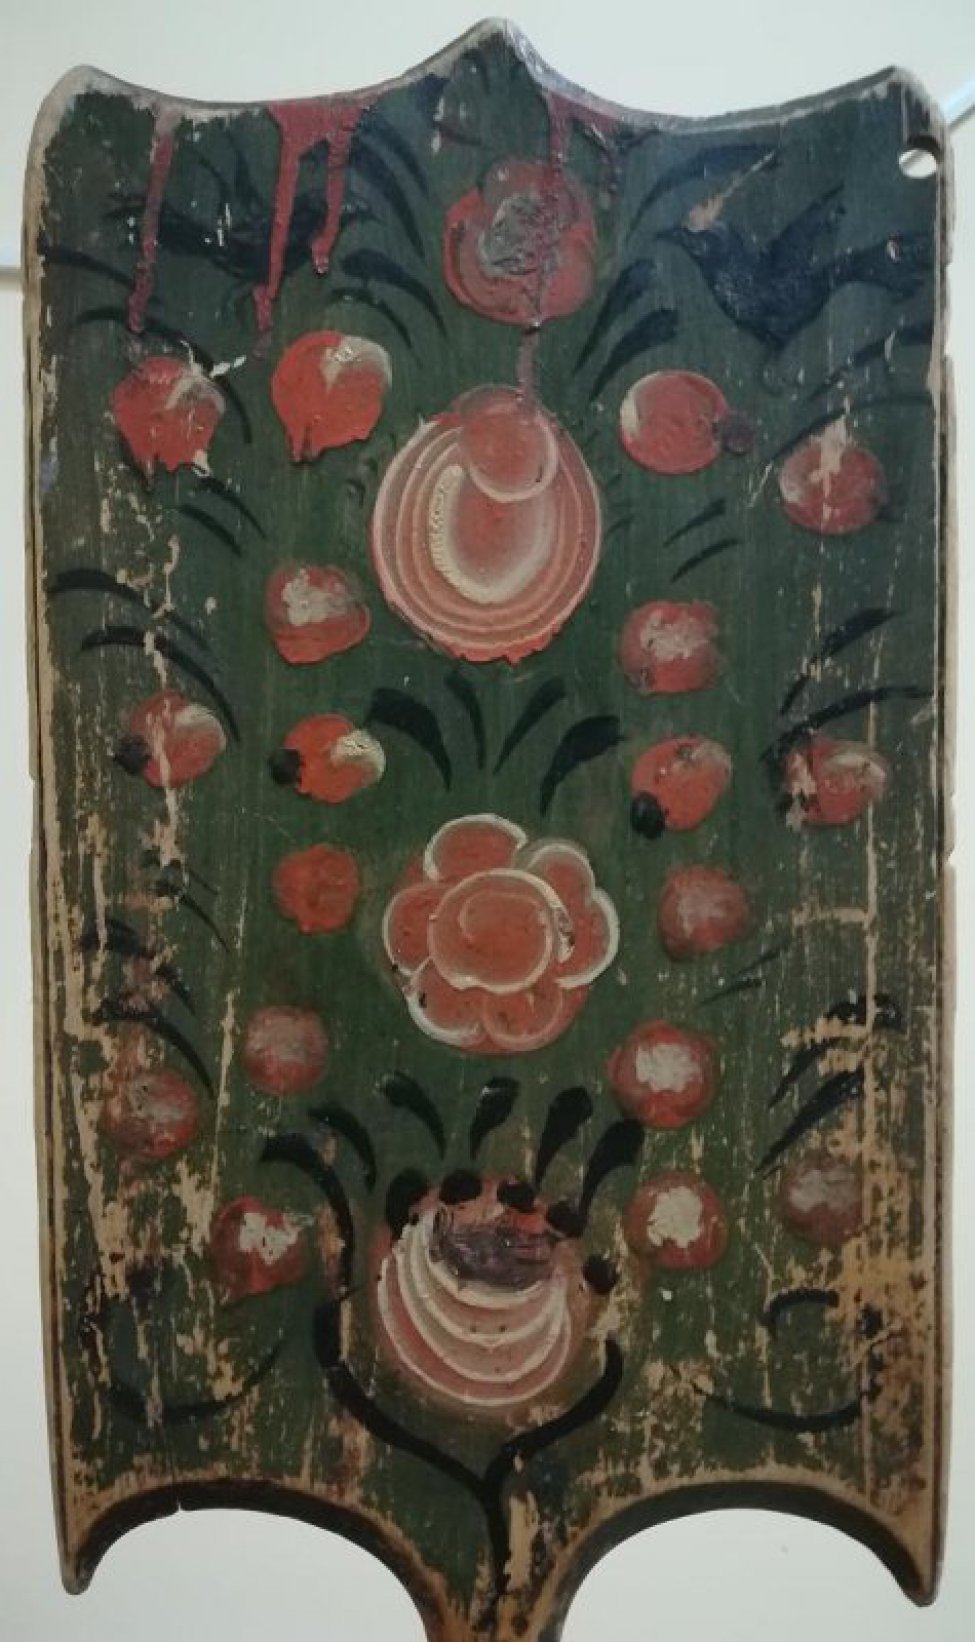 Роспись - на зеленом фоне изображены 3 цветка (вертикальный ряд) в окружении ягод и 2 черные птицы.
С оборота на красном фоне черная ветка с белыми ягодами и 2 птицы внизу.